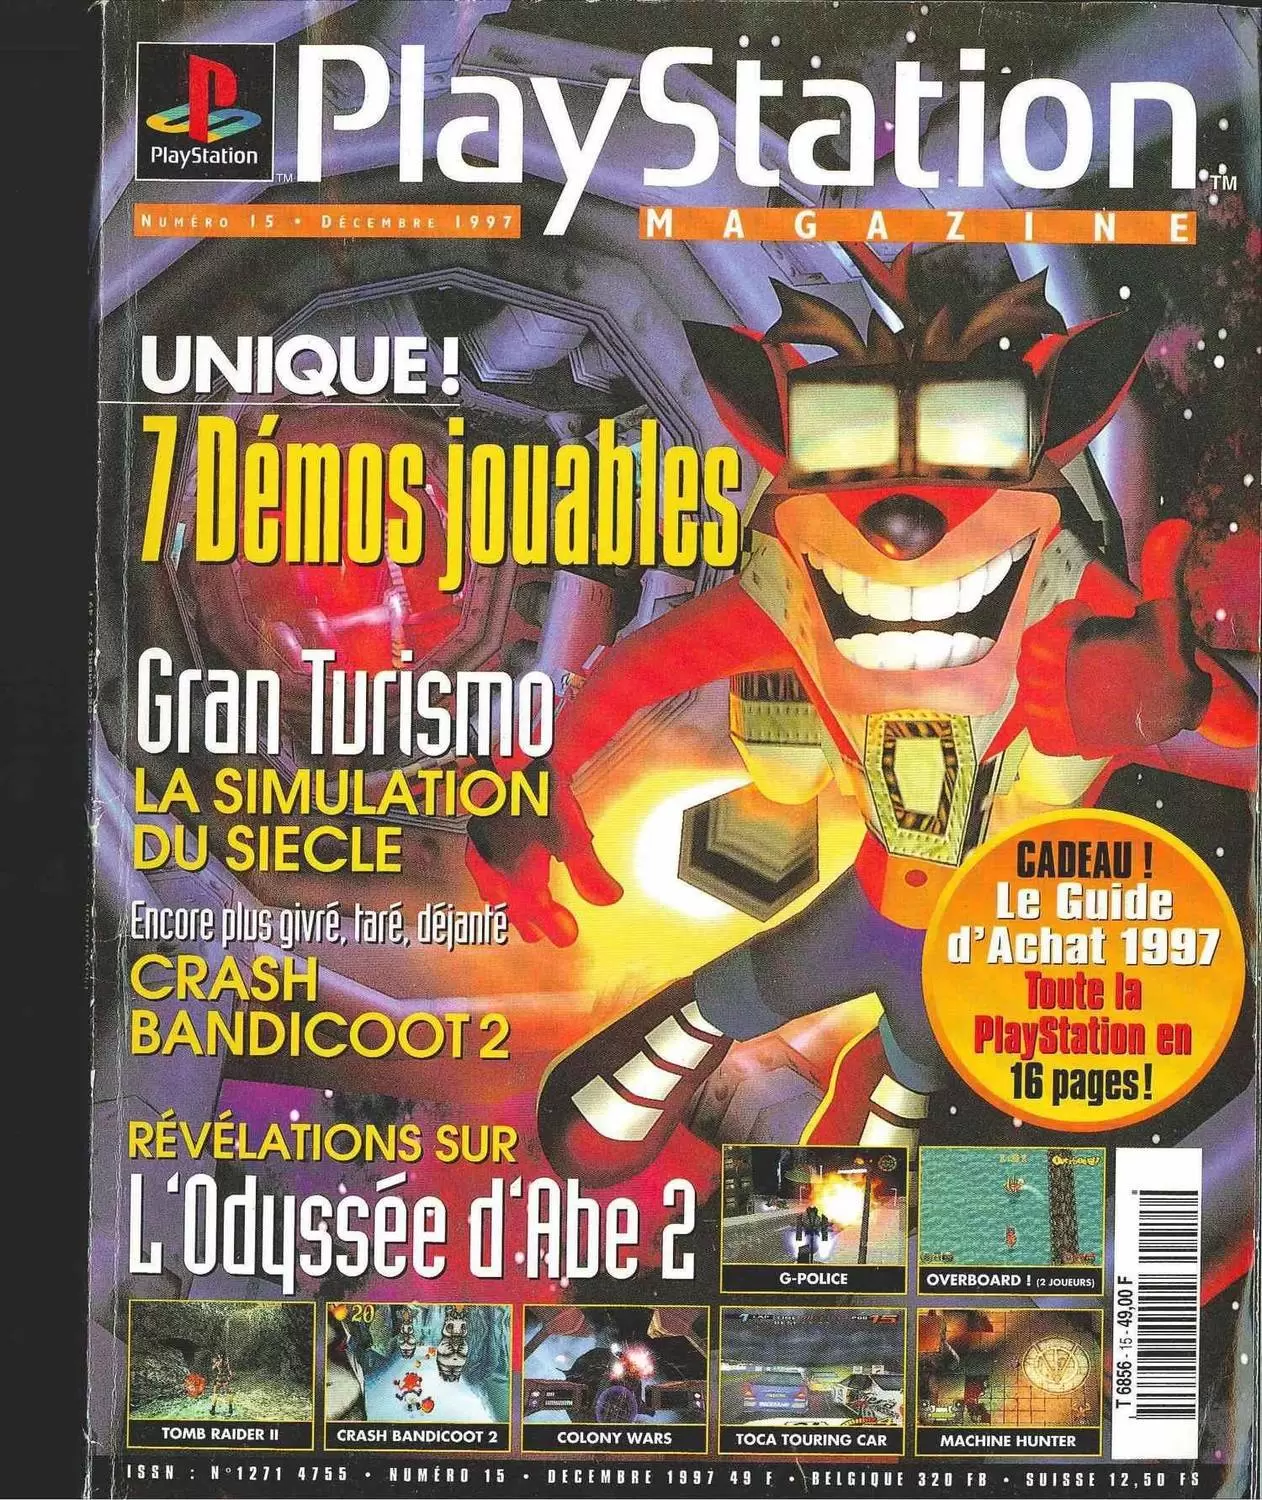 Playstation Magazine - Playstation Magazine #15